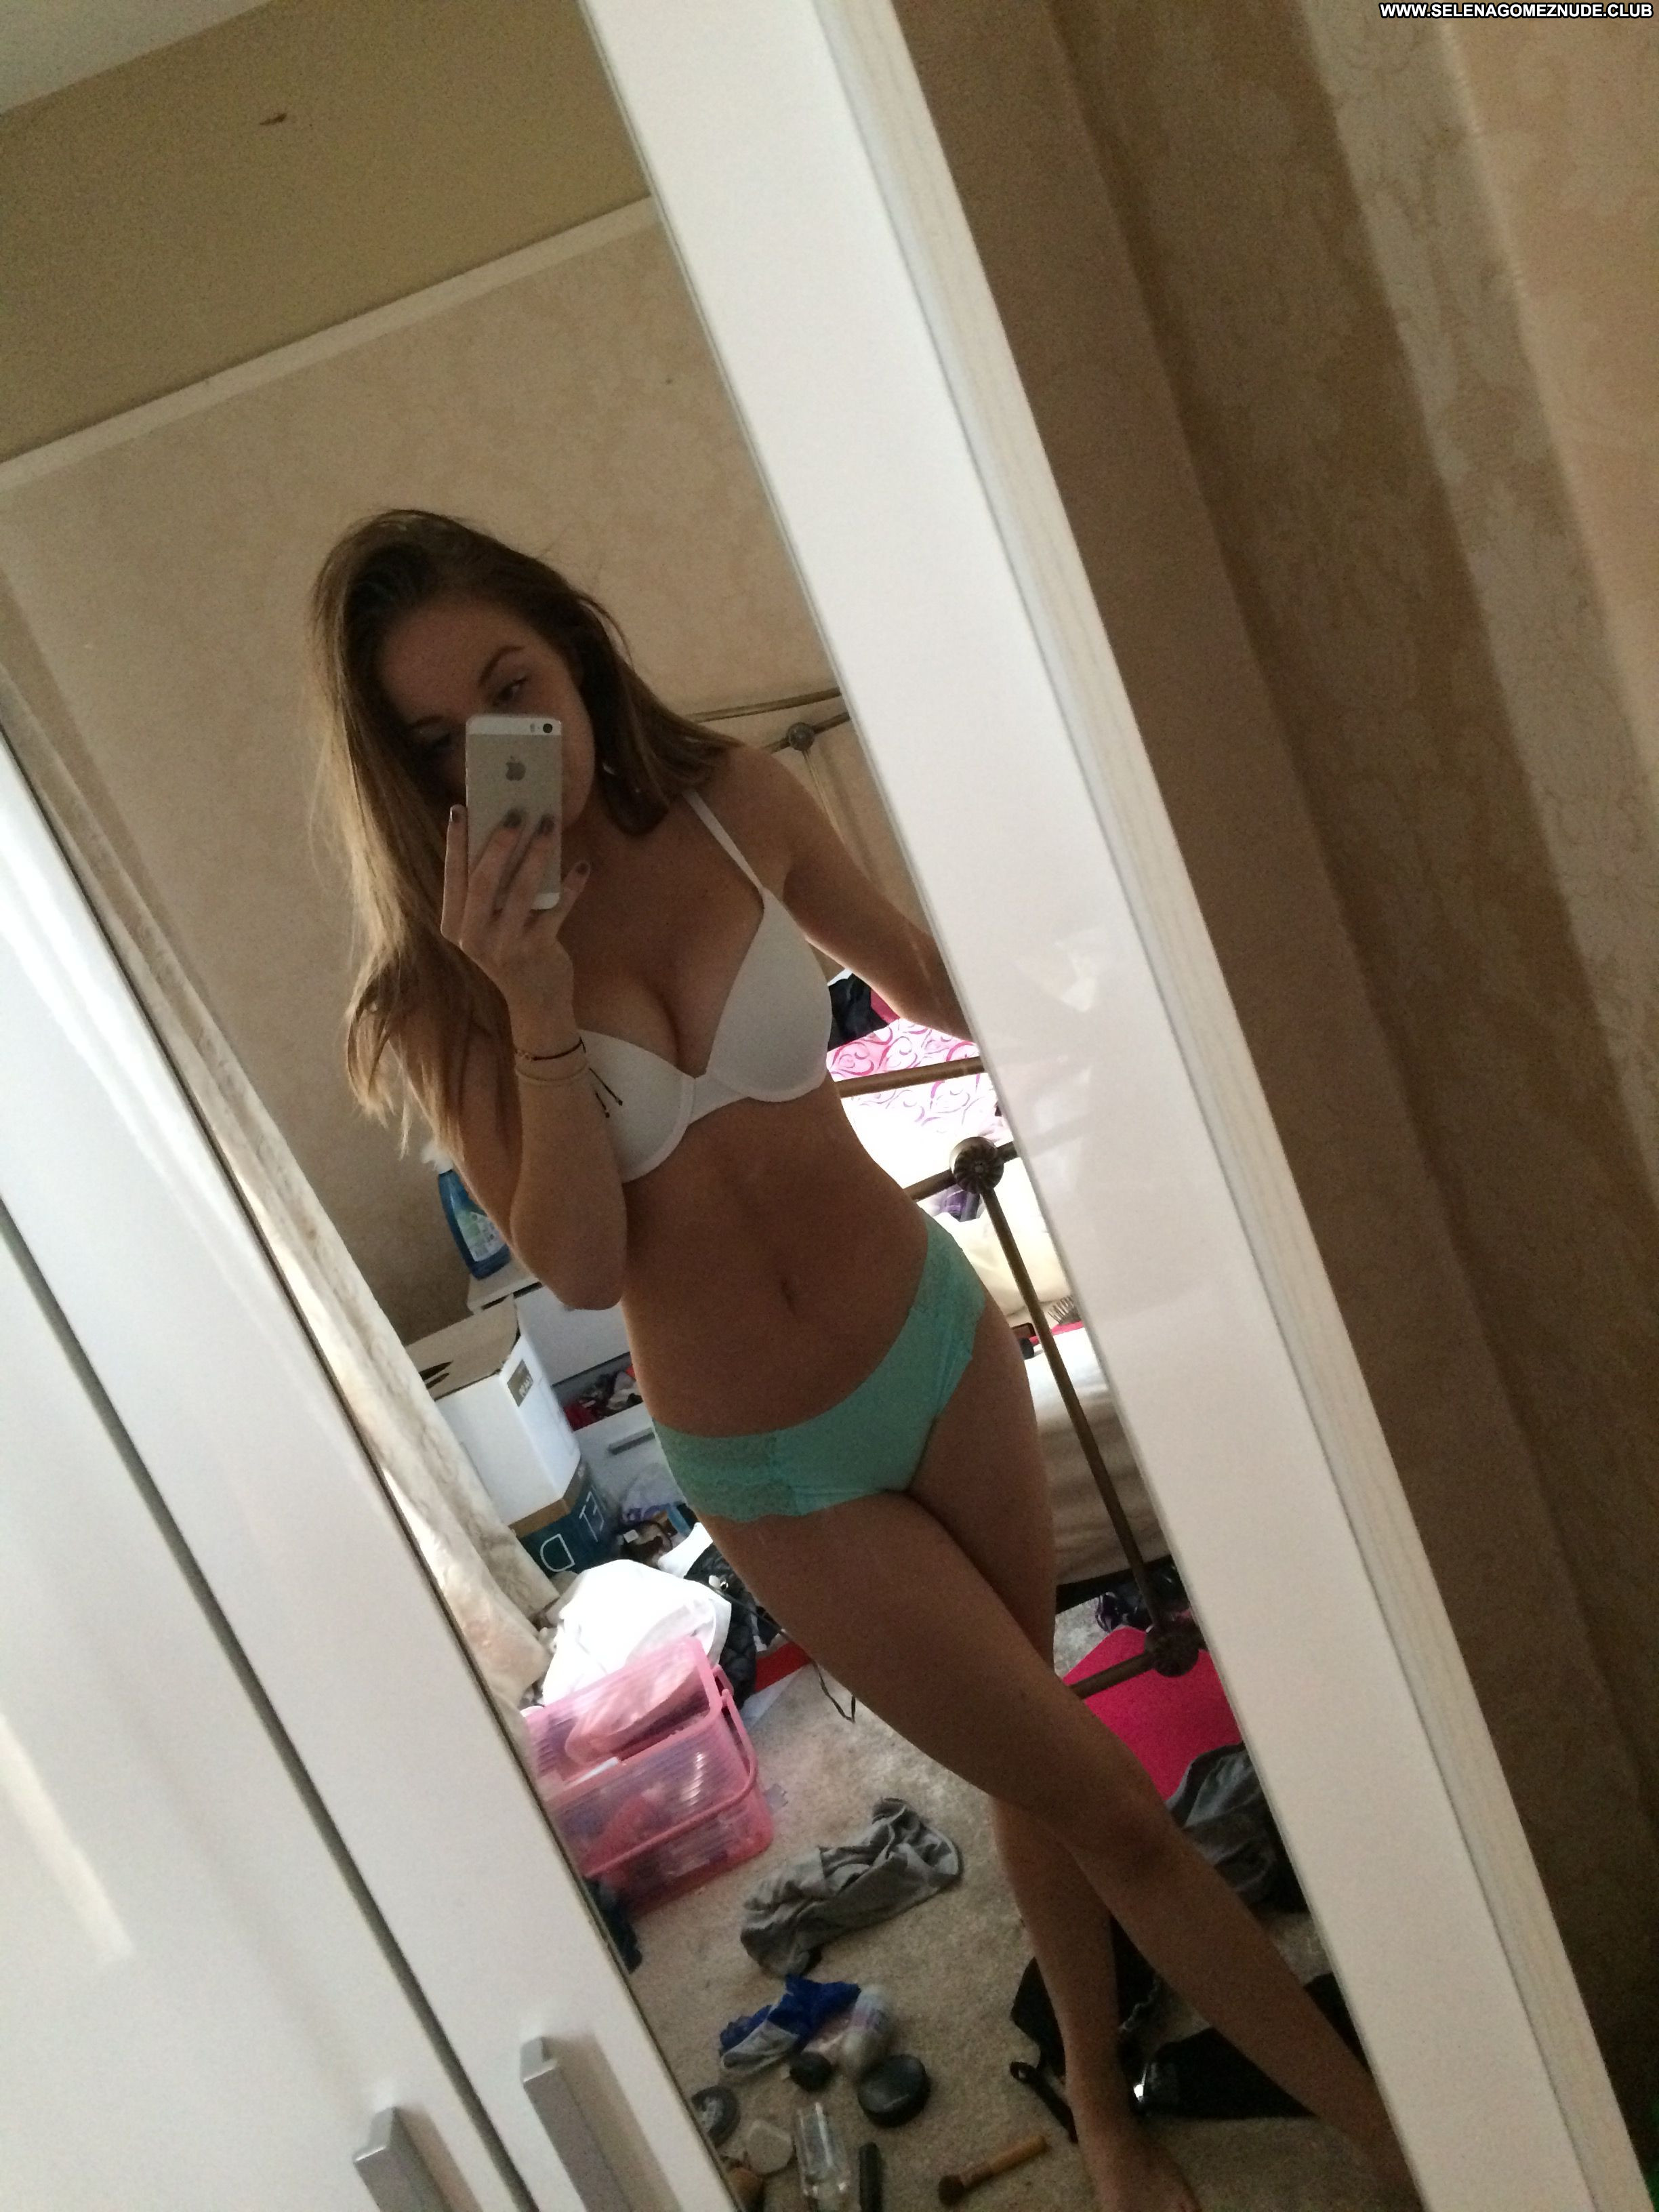 galleries average girl selfie topless